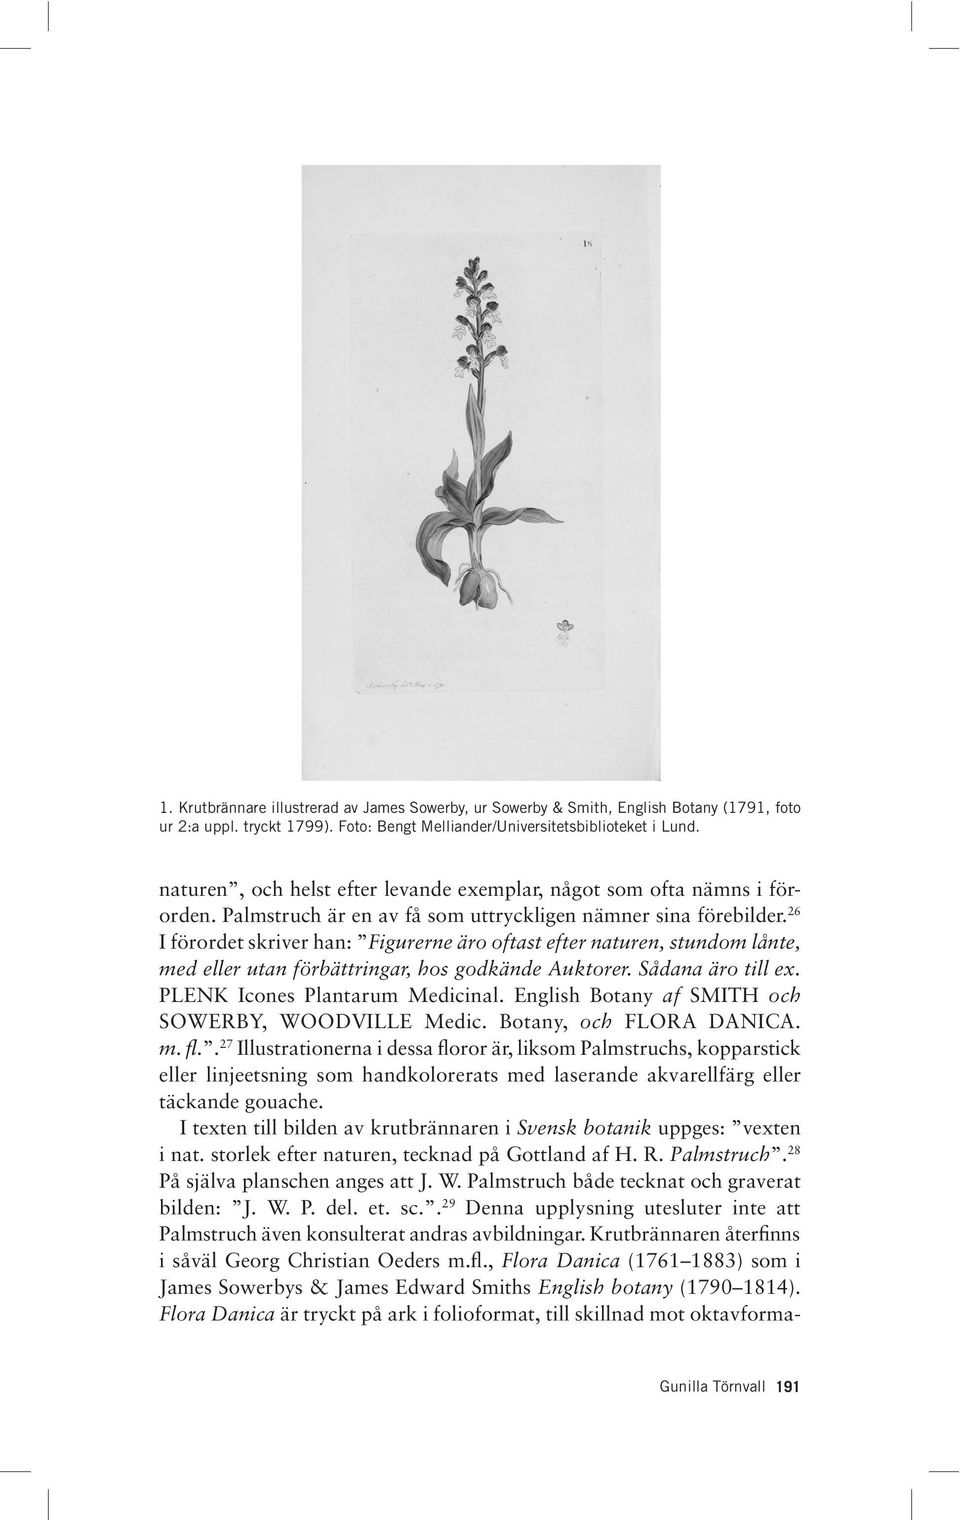 26 I förordet skriver han: Figurerne äro oftast efter naturen, stundom lånte, med eller utan förbättringar, hos godkände Auktorer. Sådana äro till ex. PLENK Icones Plantarum Medicinal.